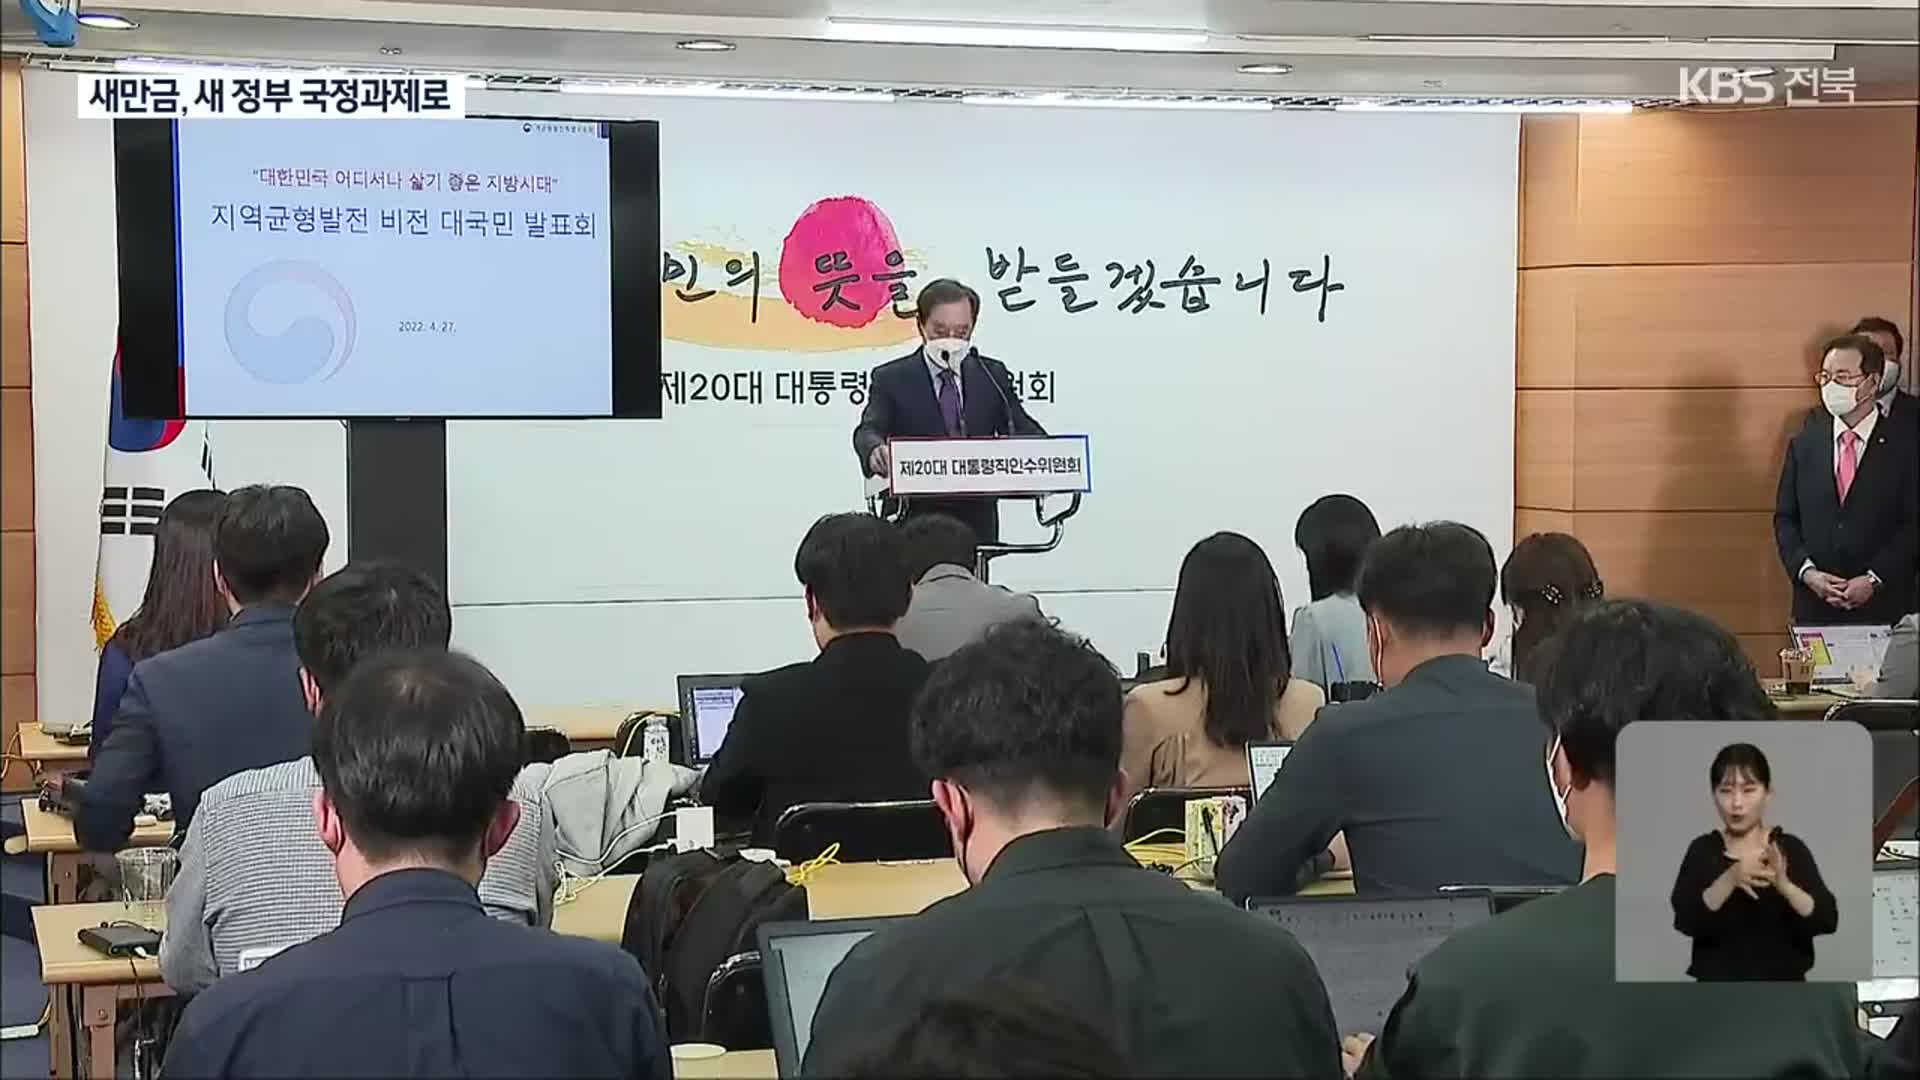 ‘새만금 국제투자진흥지구’ 새 정부 국정과제 포함